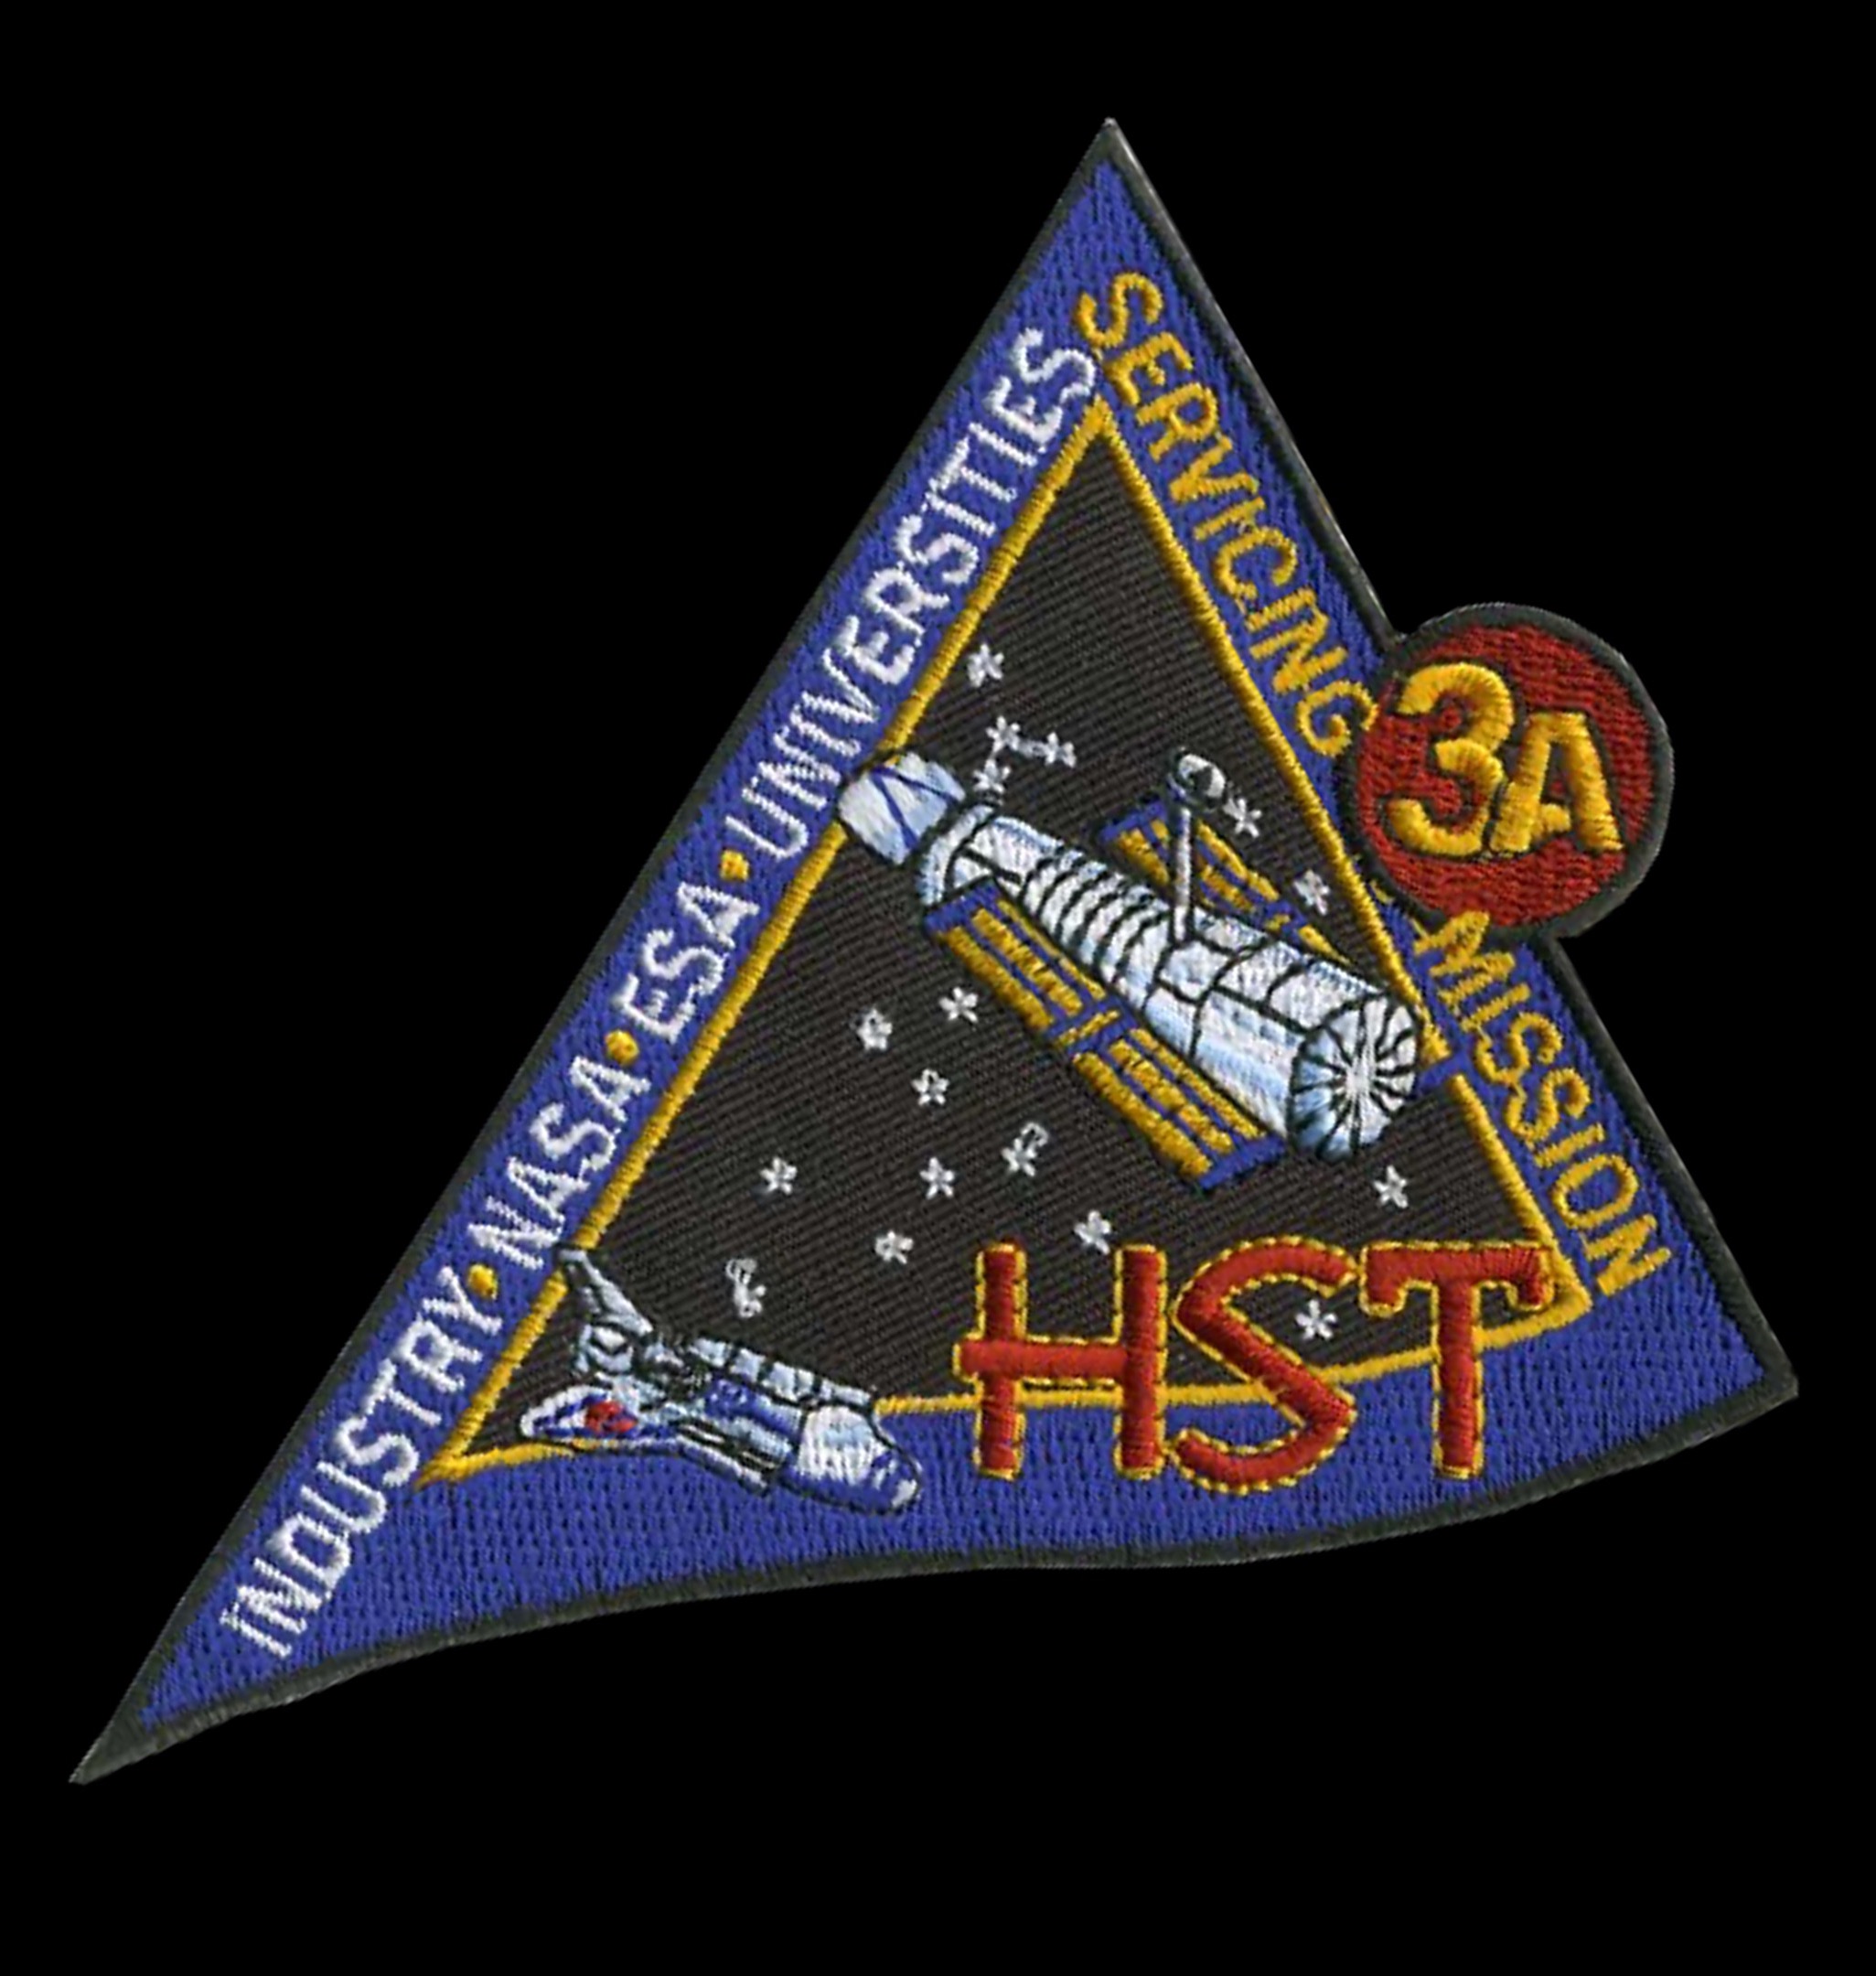 Hubble Servicing Mission 3A Patch